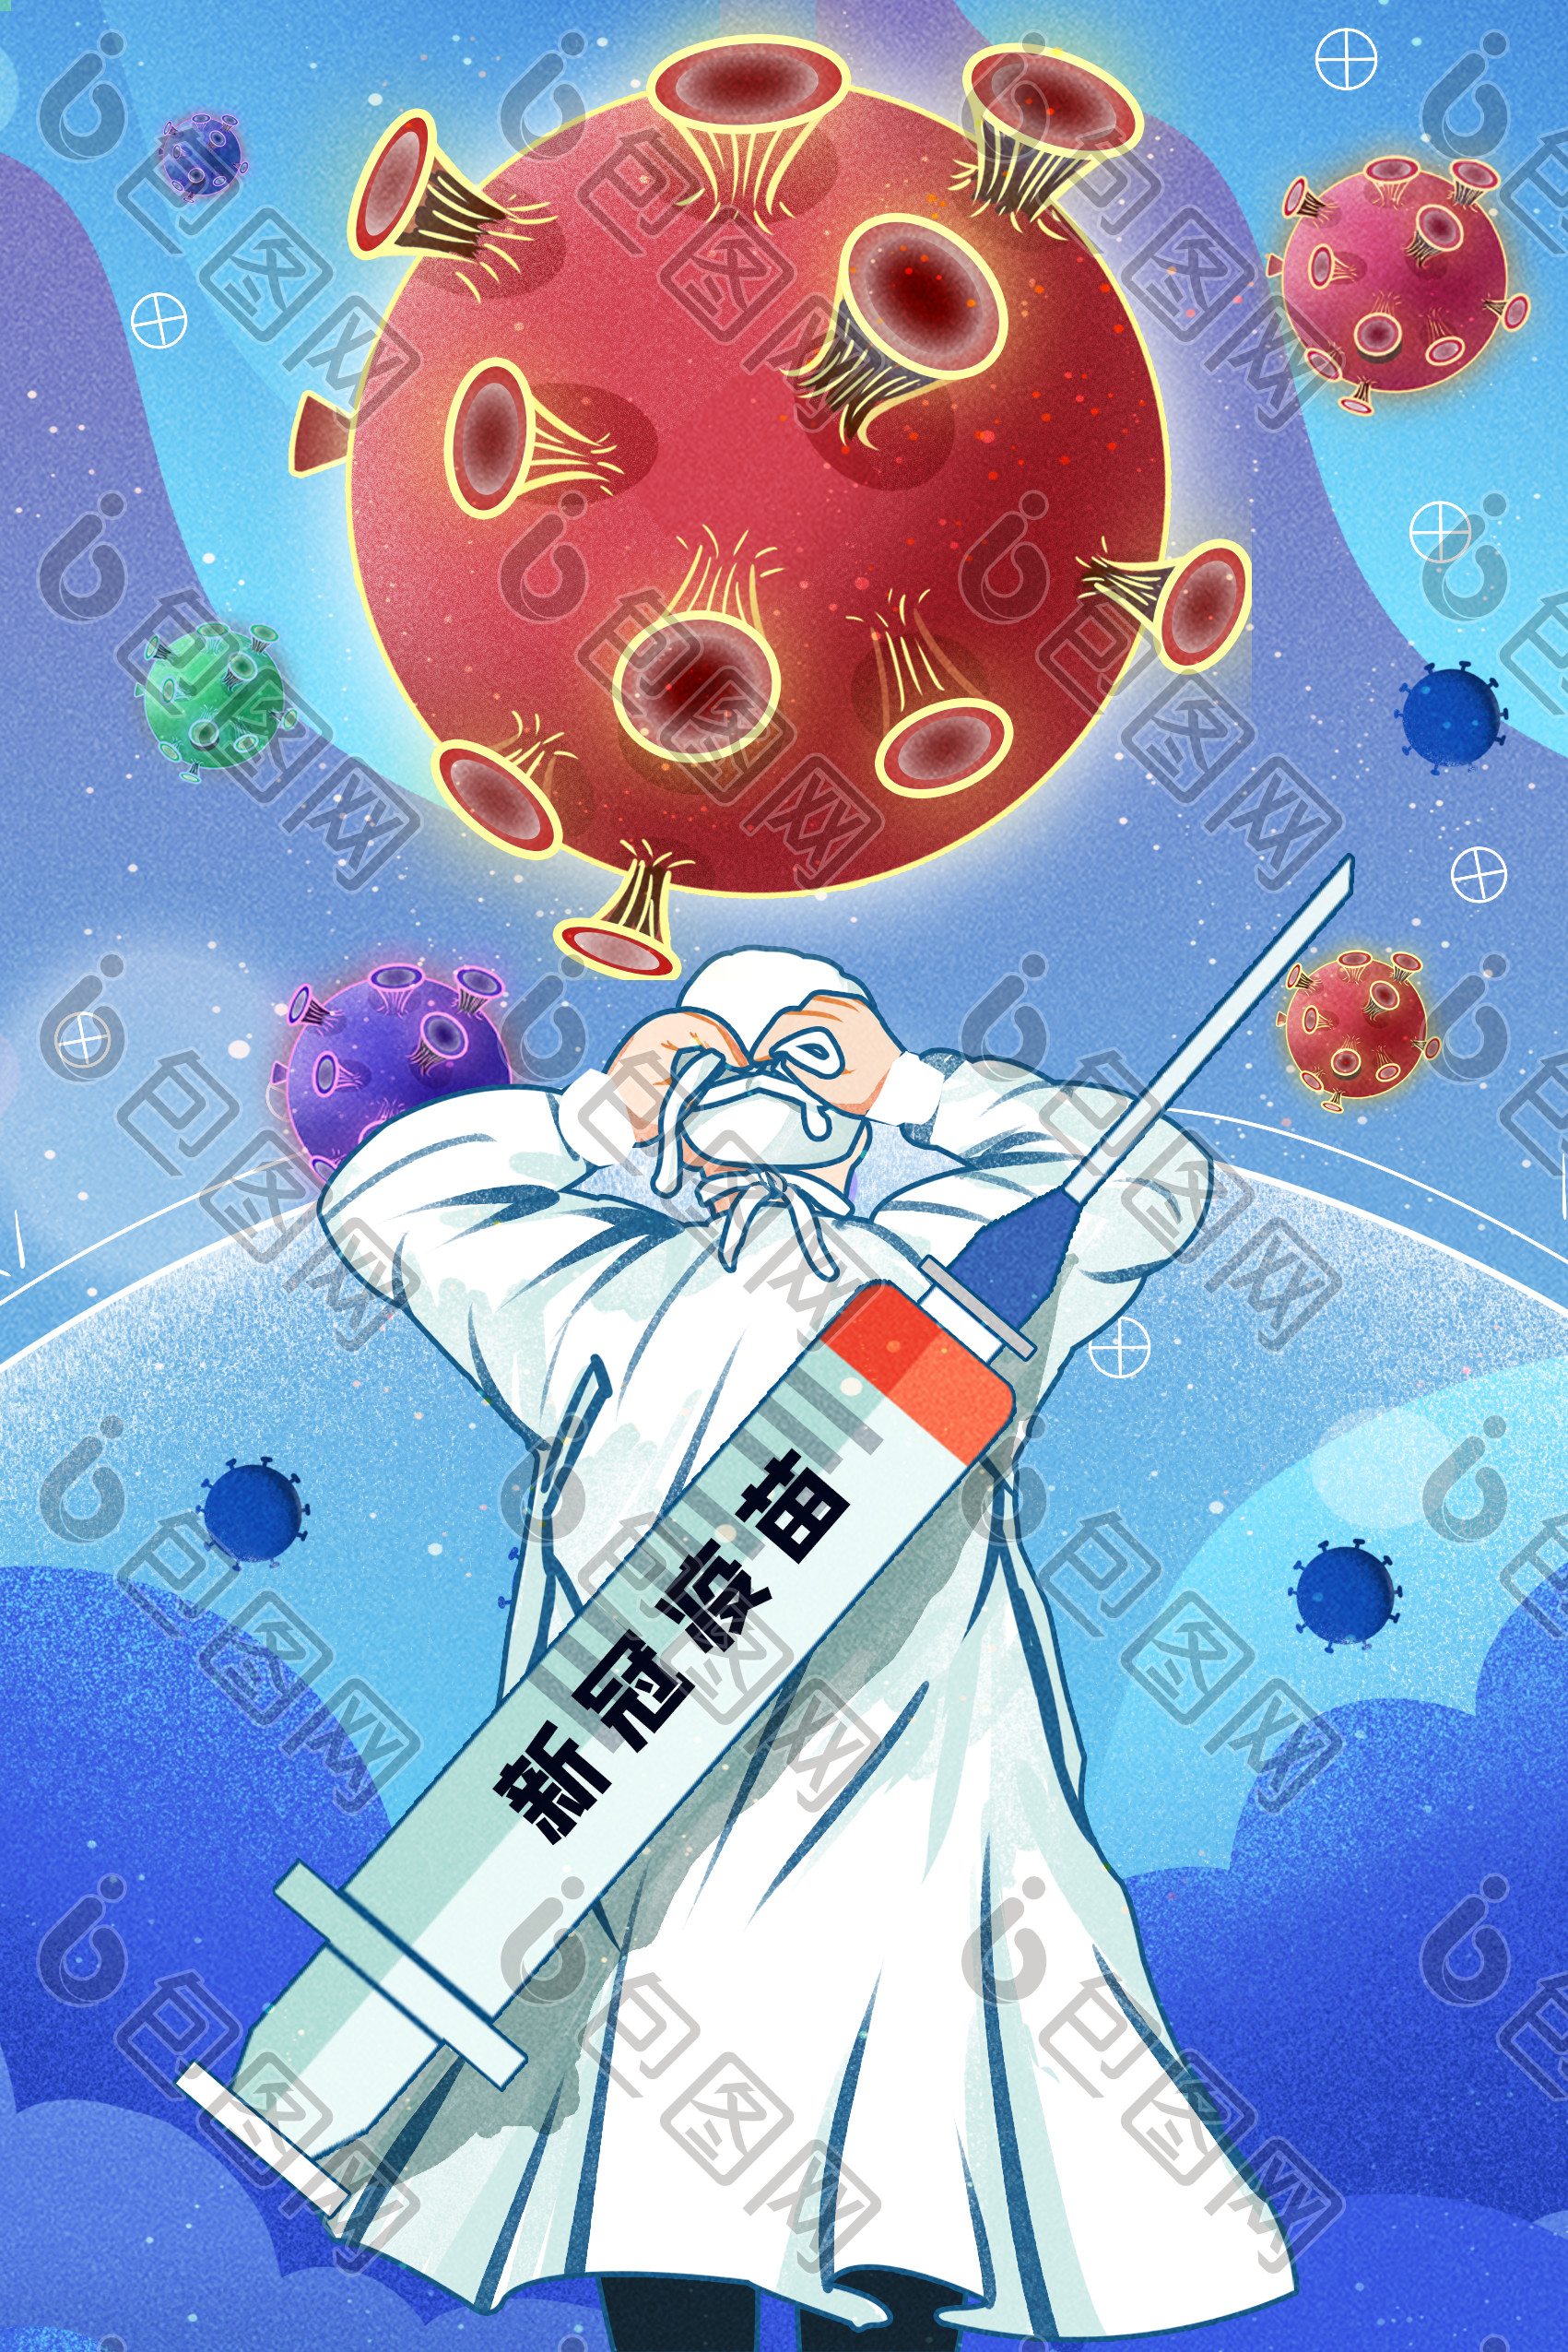 中国日报插画疫情图片